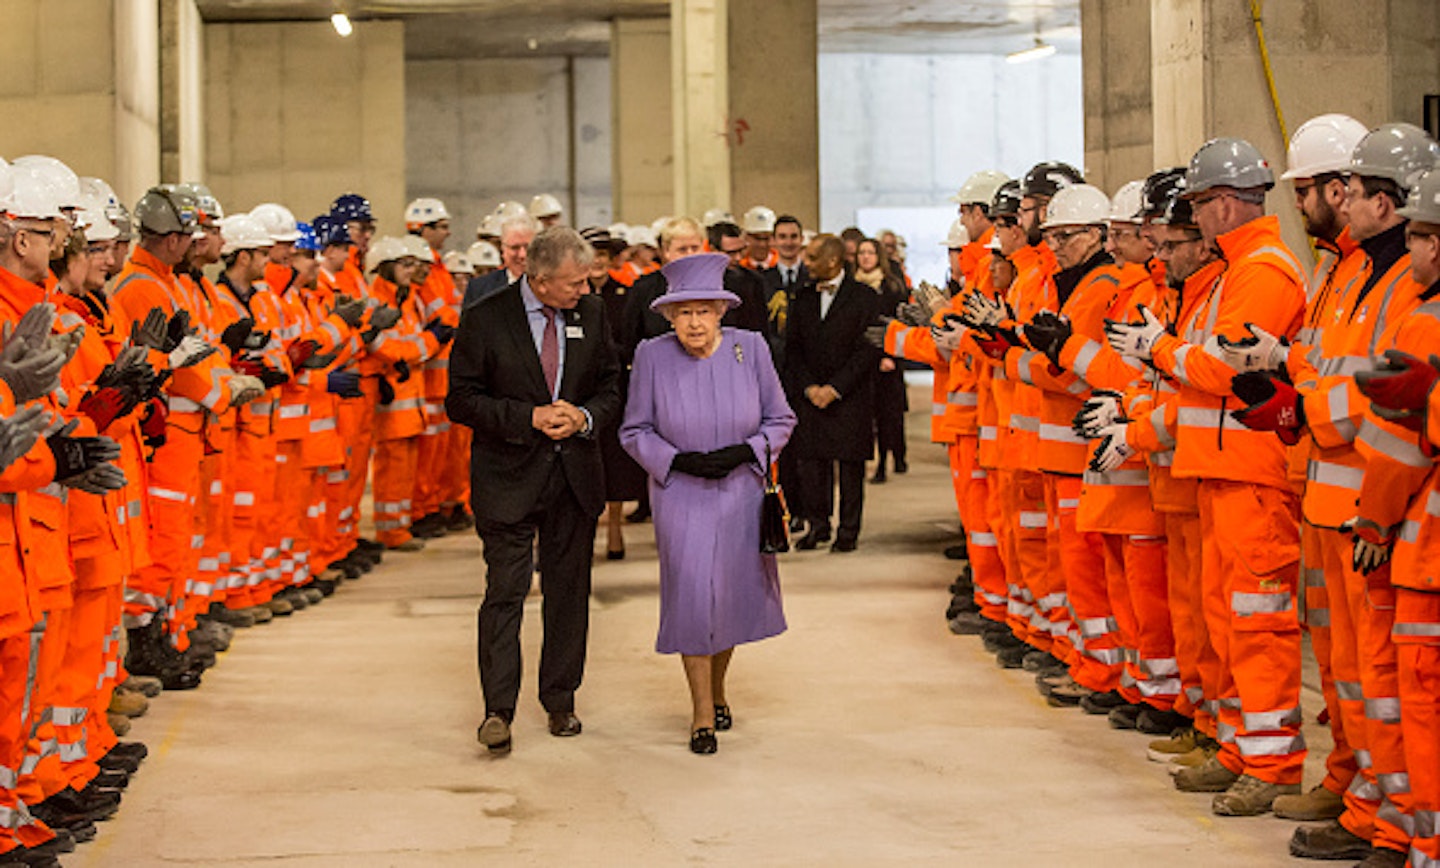 Queen Elizabeth II visit